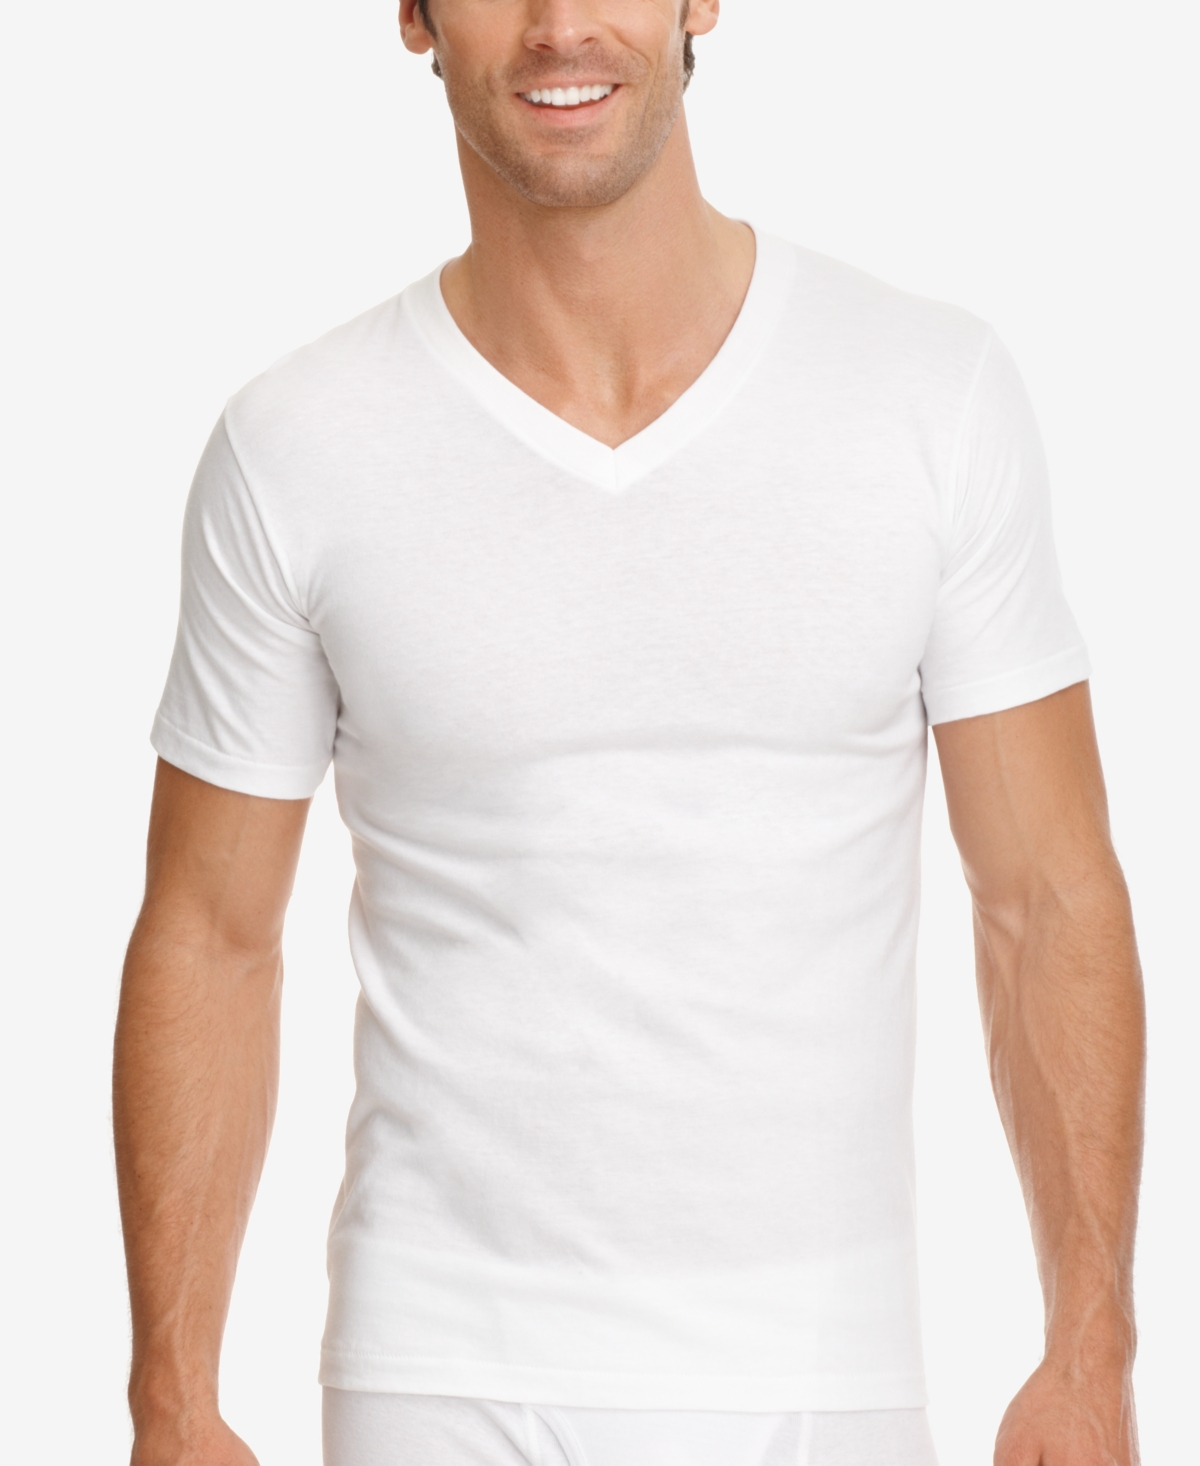 Men's Classic V-neck Undershirt, Pack of 3 - Diamond White